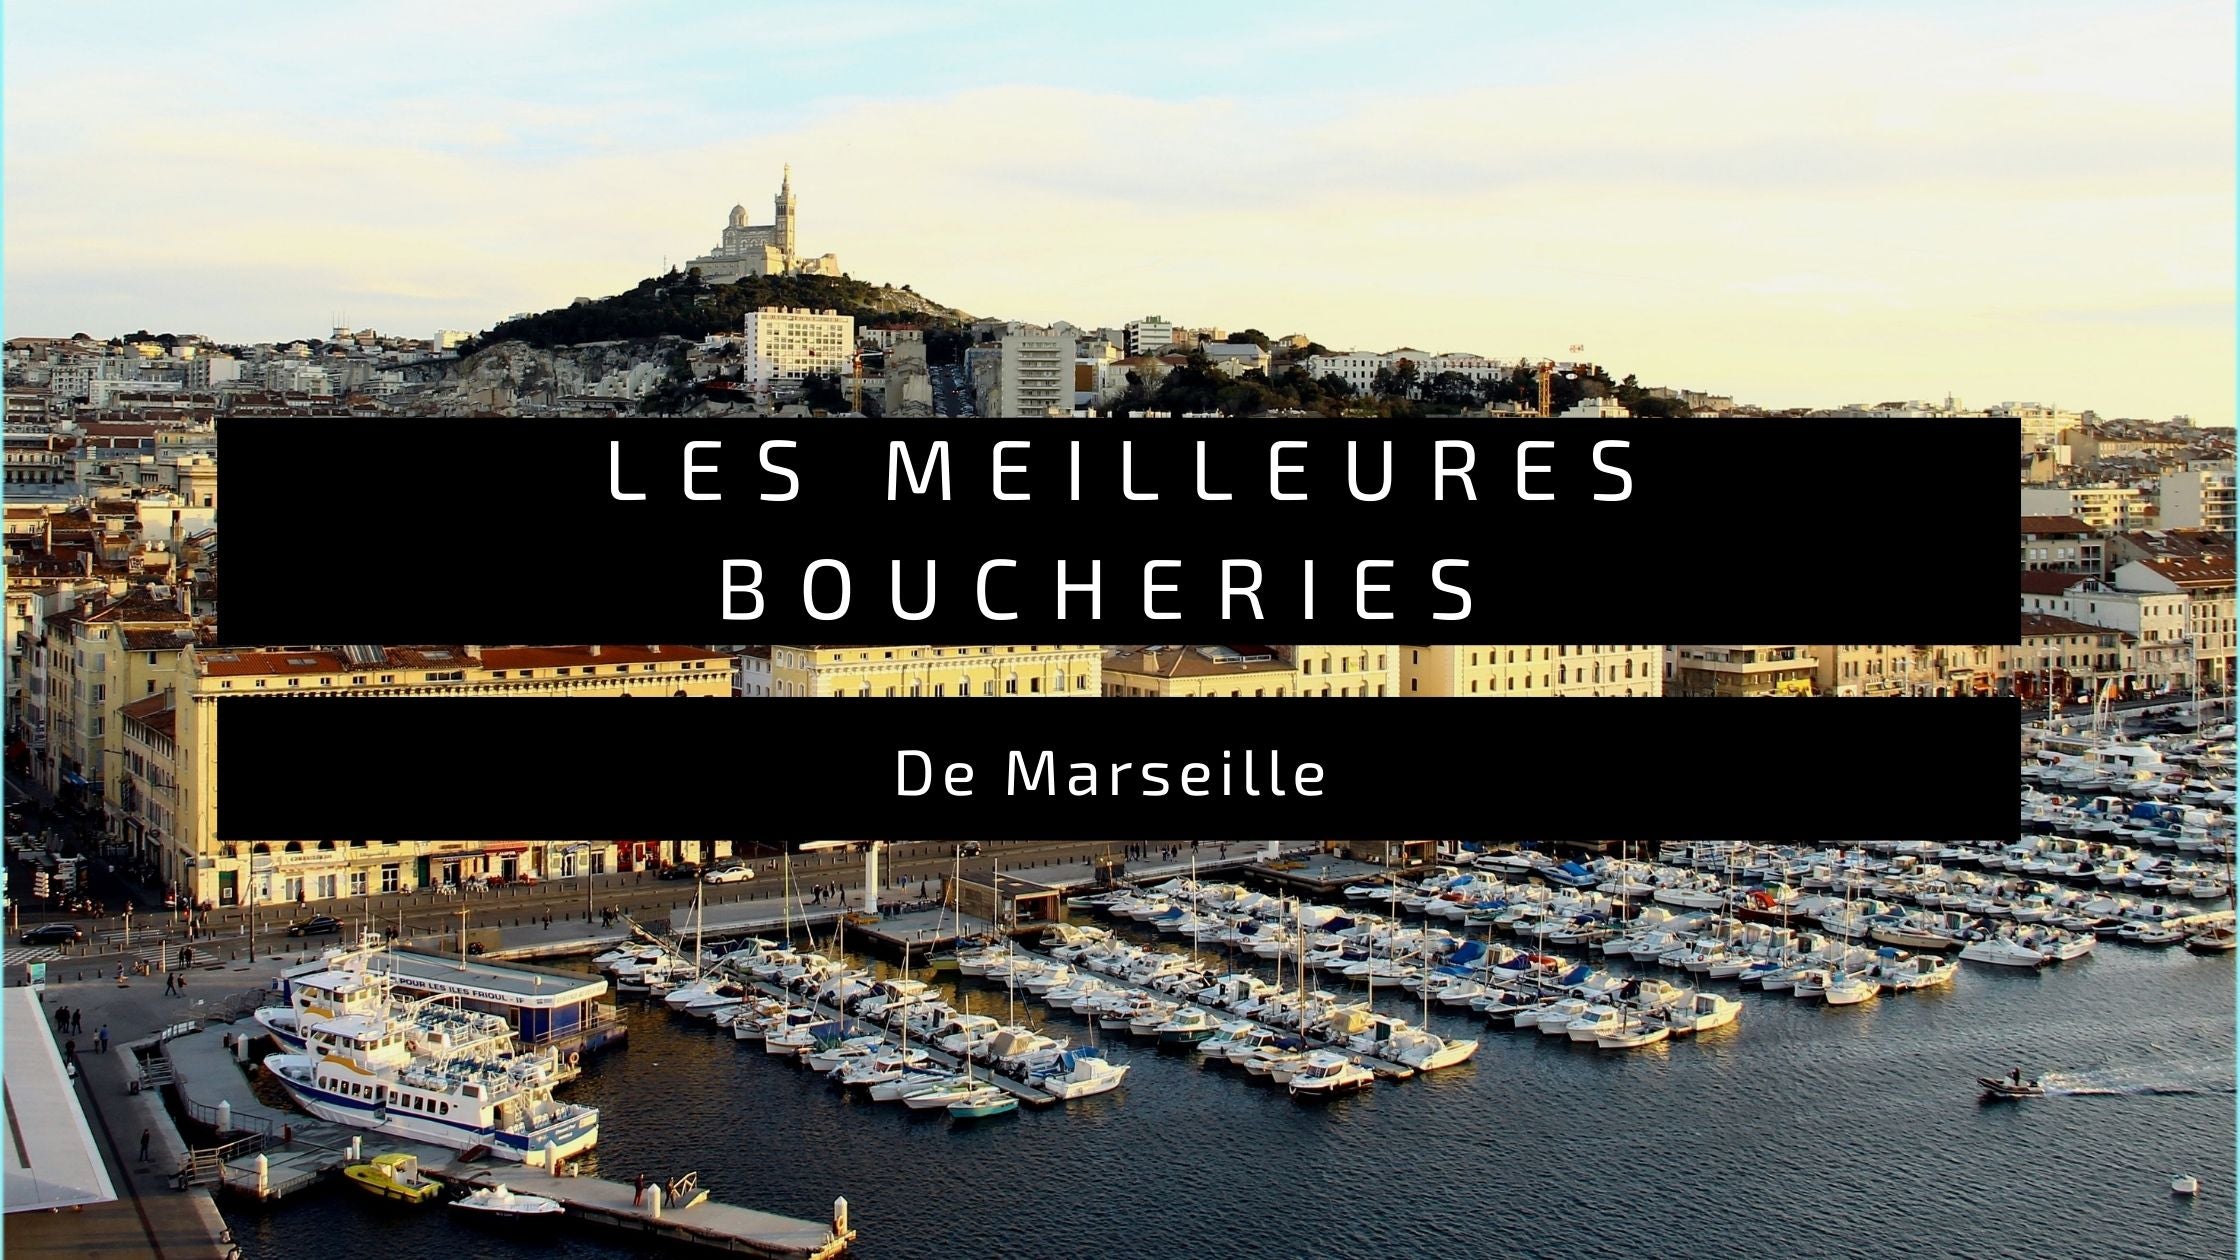 Les Meilleures Boucheries de Marseille